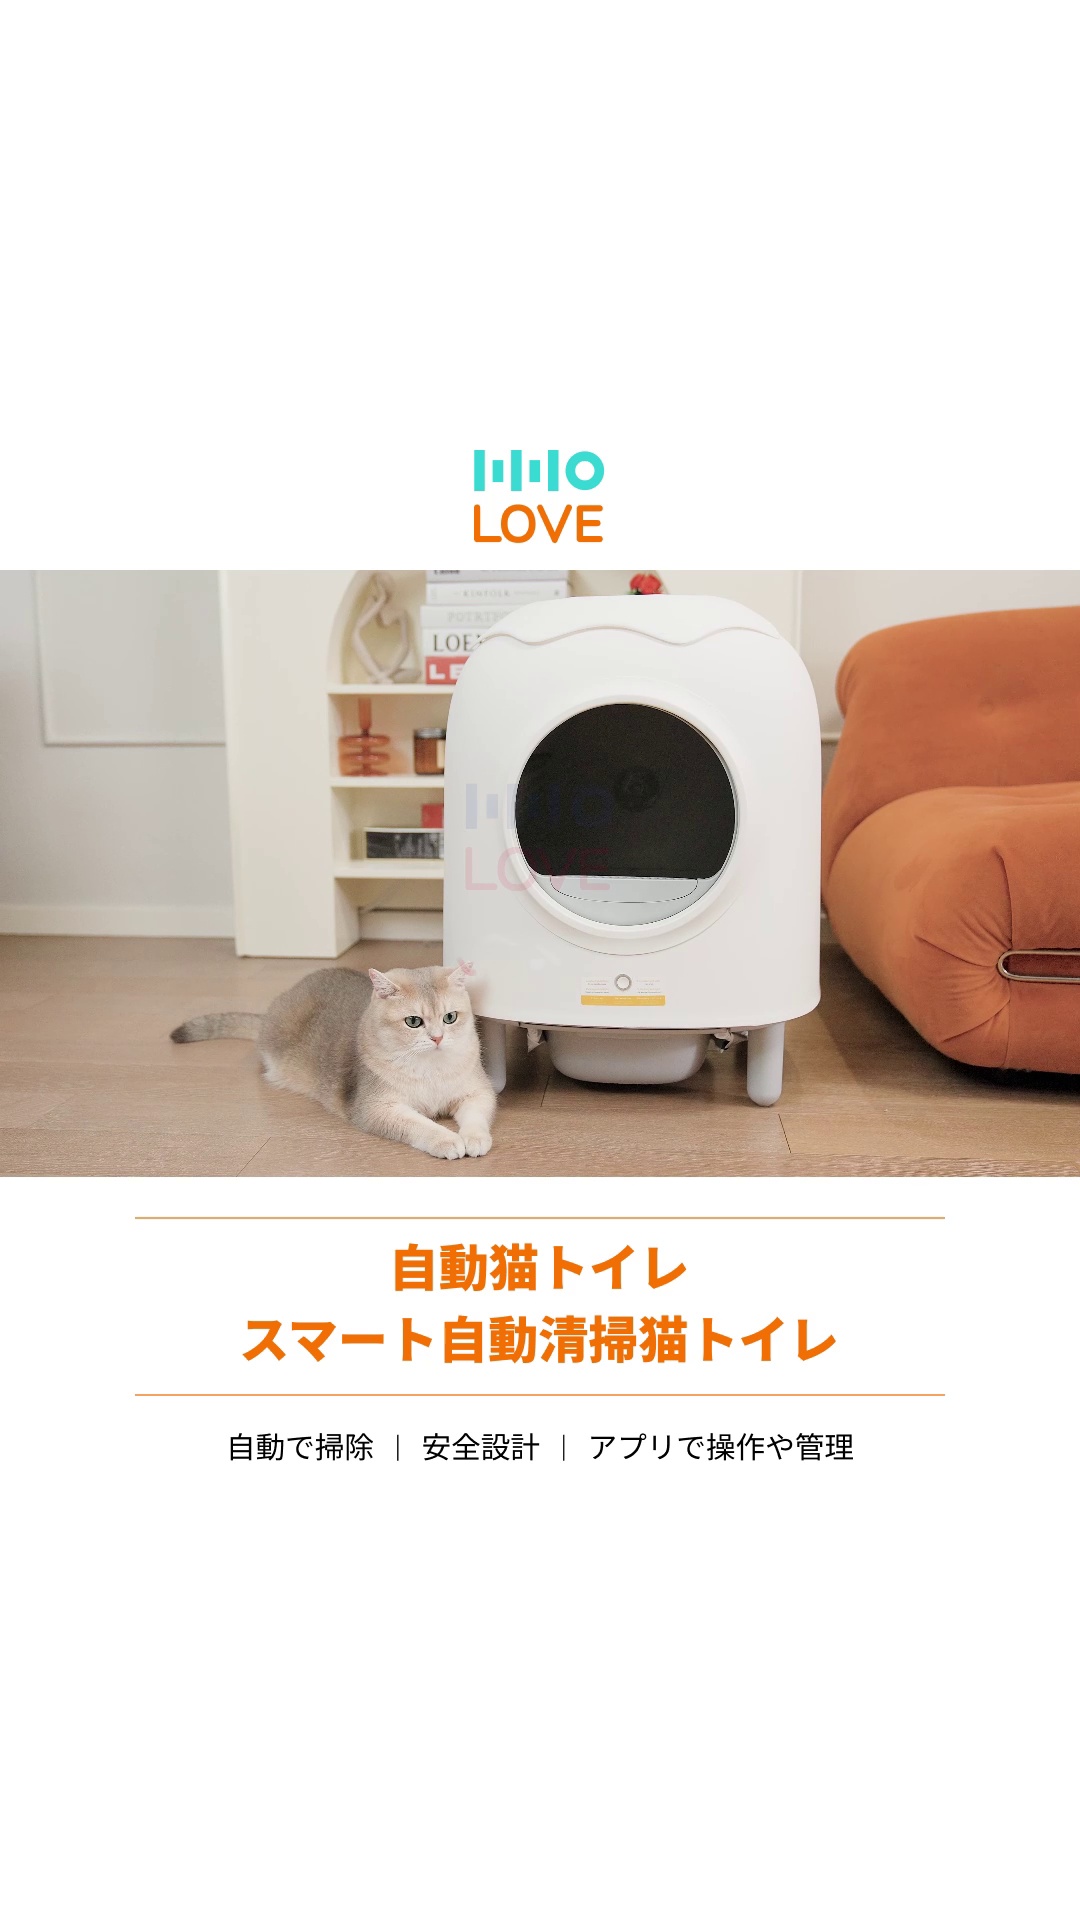 HHOLOVE 全自動猫トイレ|アプリで管理・大容量・超静音・安全機能で猫